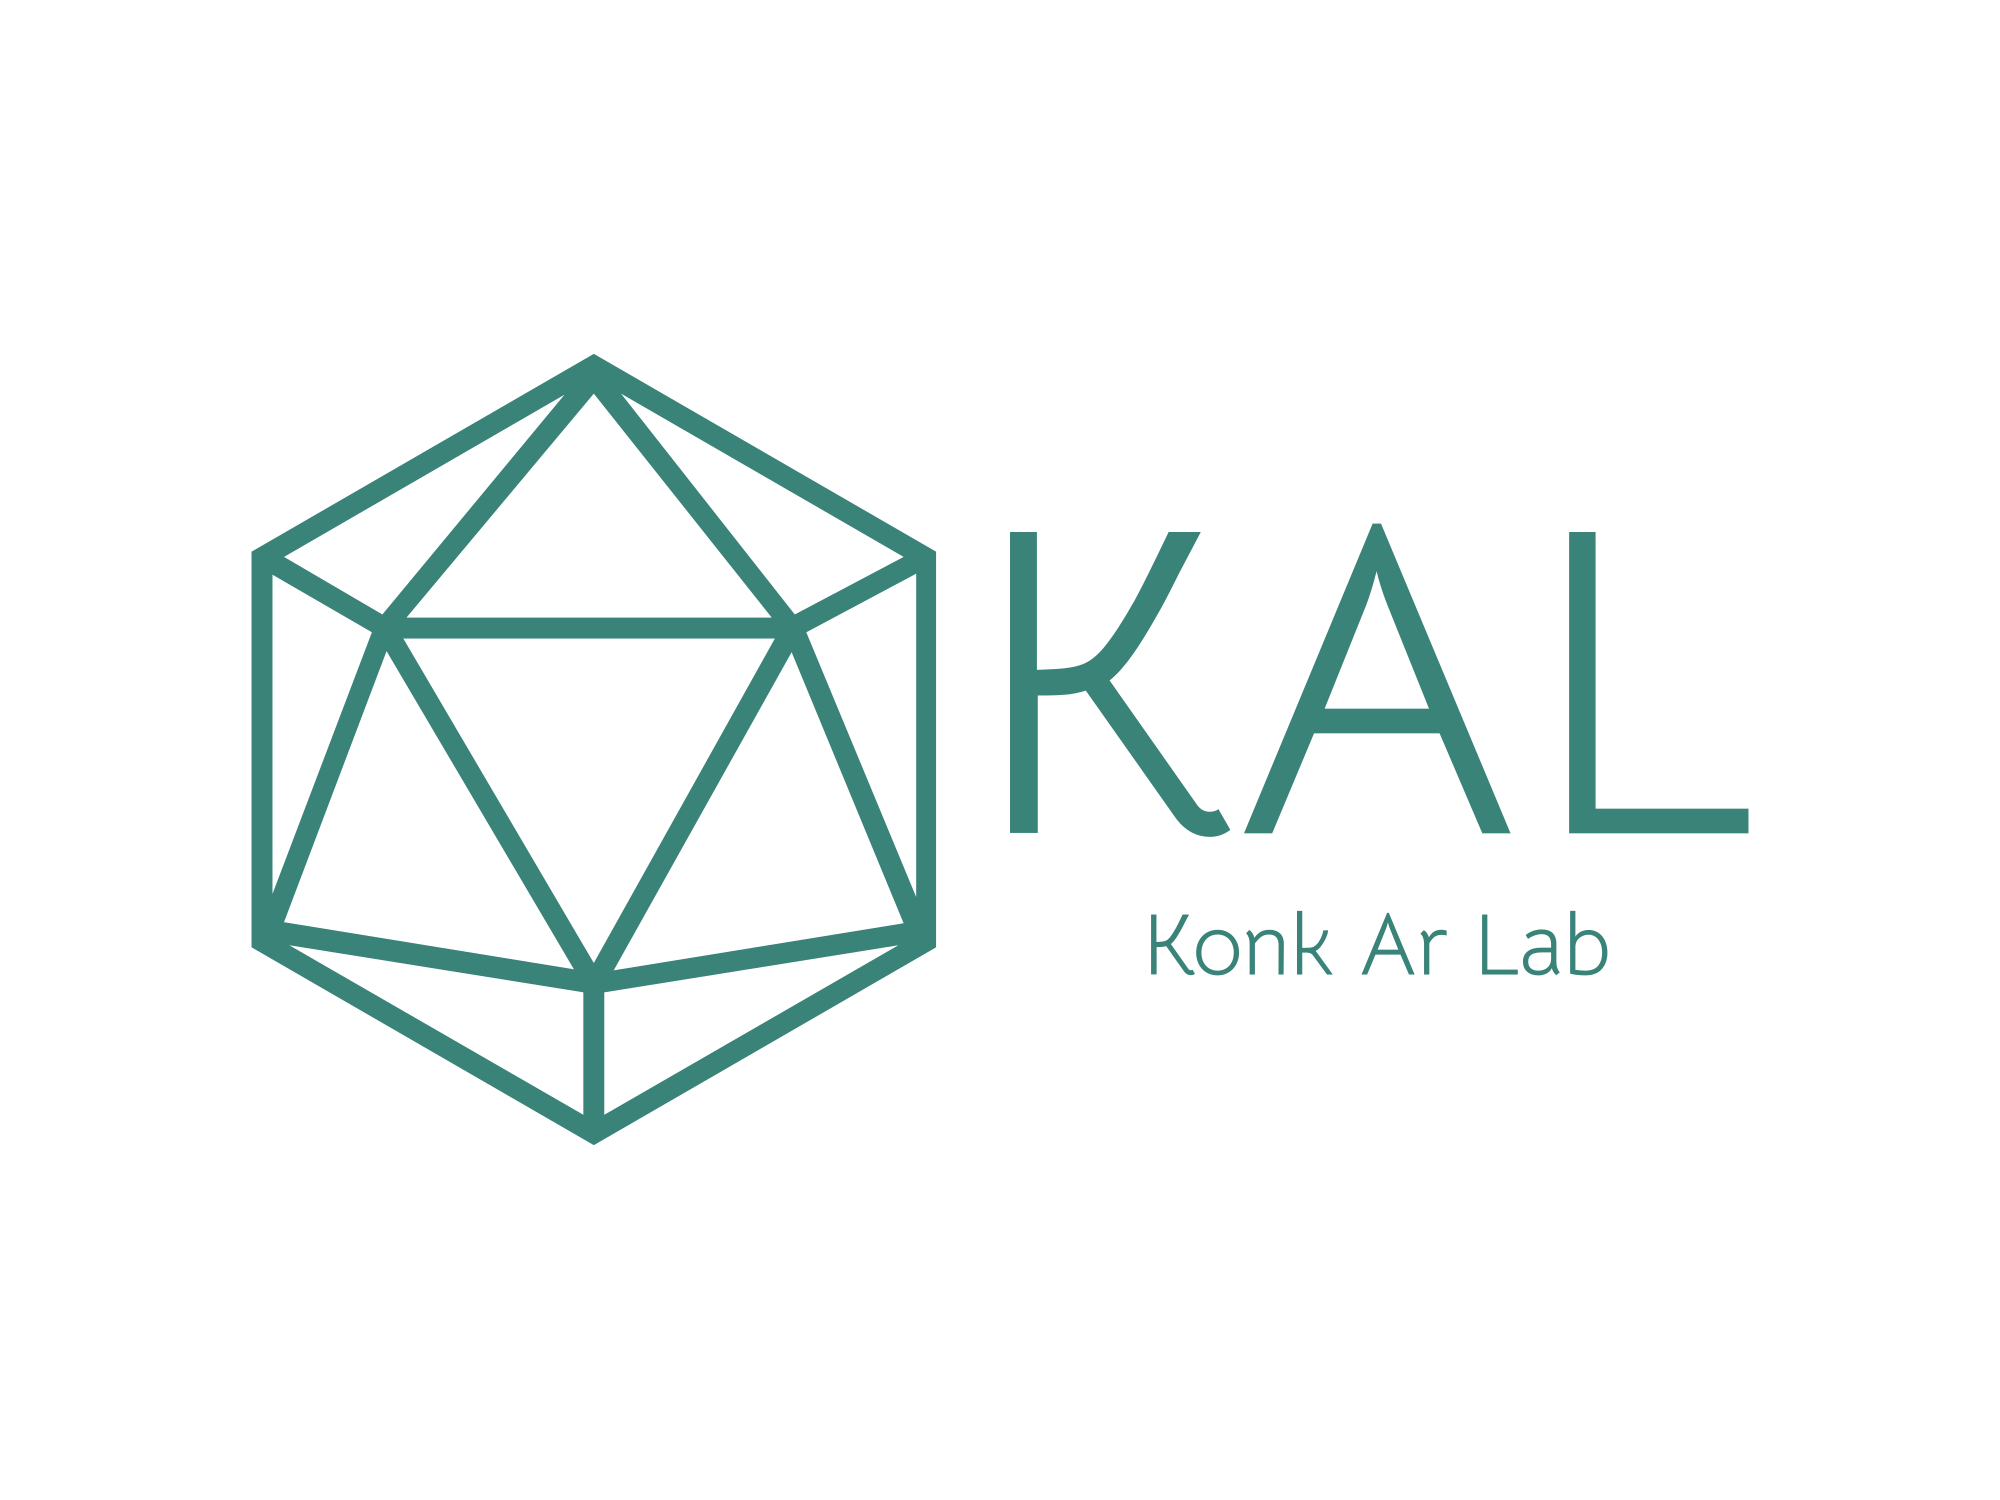 Group-Konk Ar Lab kal-high-resolution-color-logo 5 .png